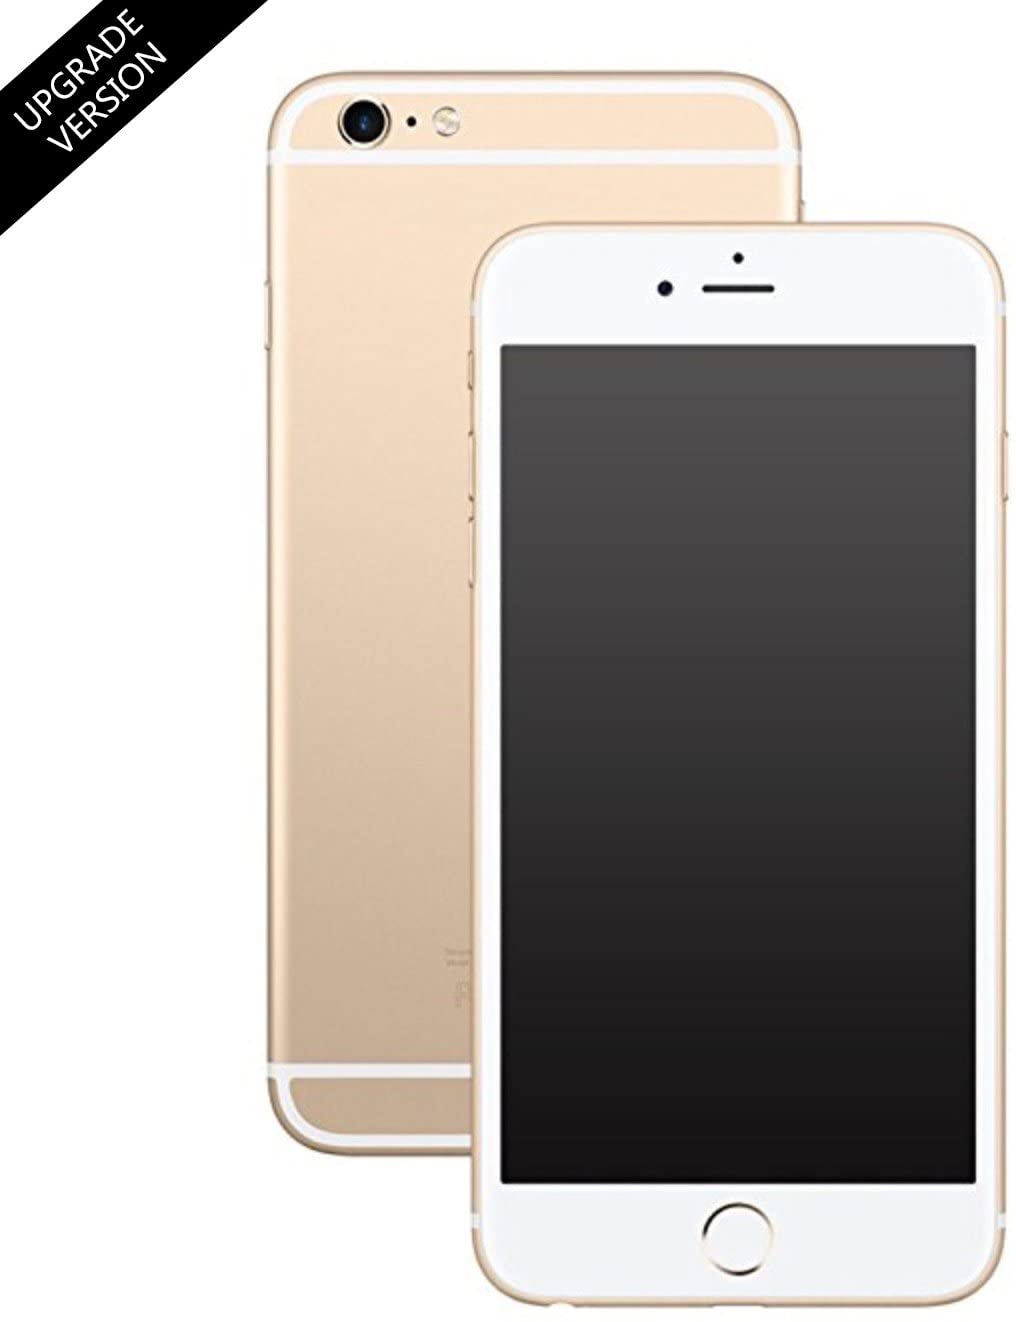 Piégez vos amis avec ce faux iPhone 6 | Idées cadeaux insolites